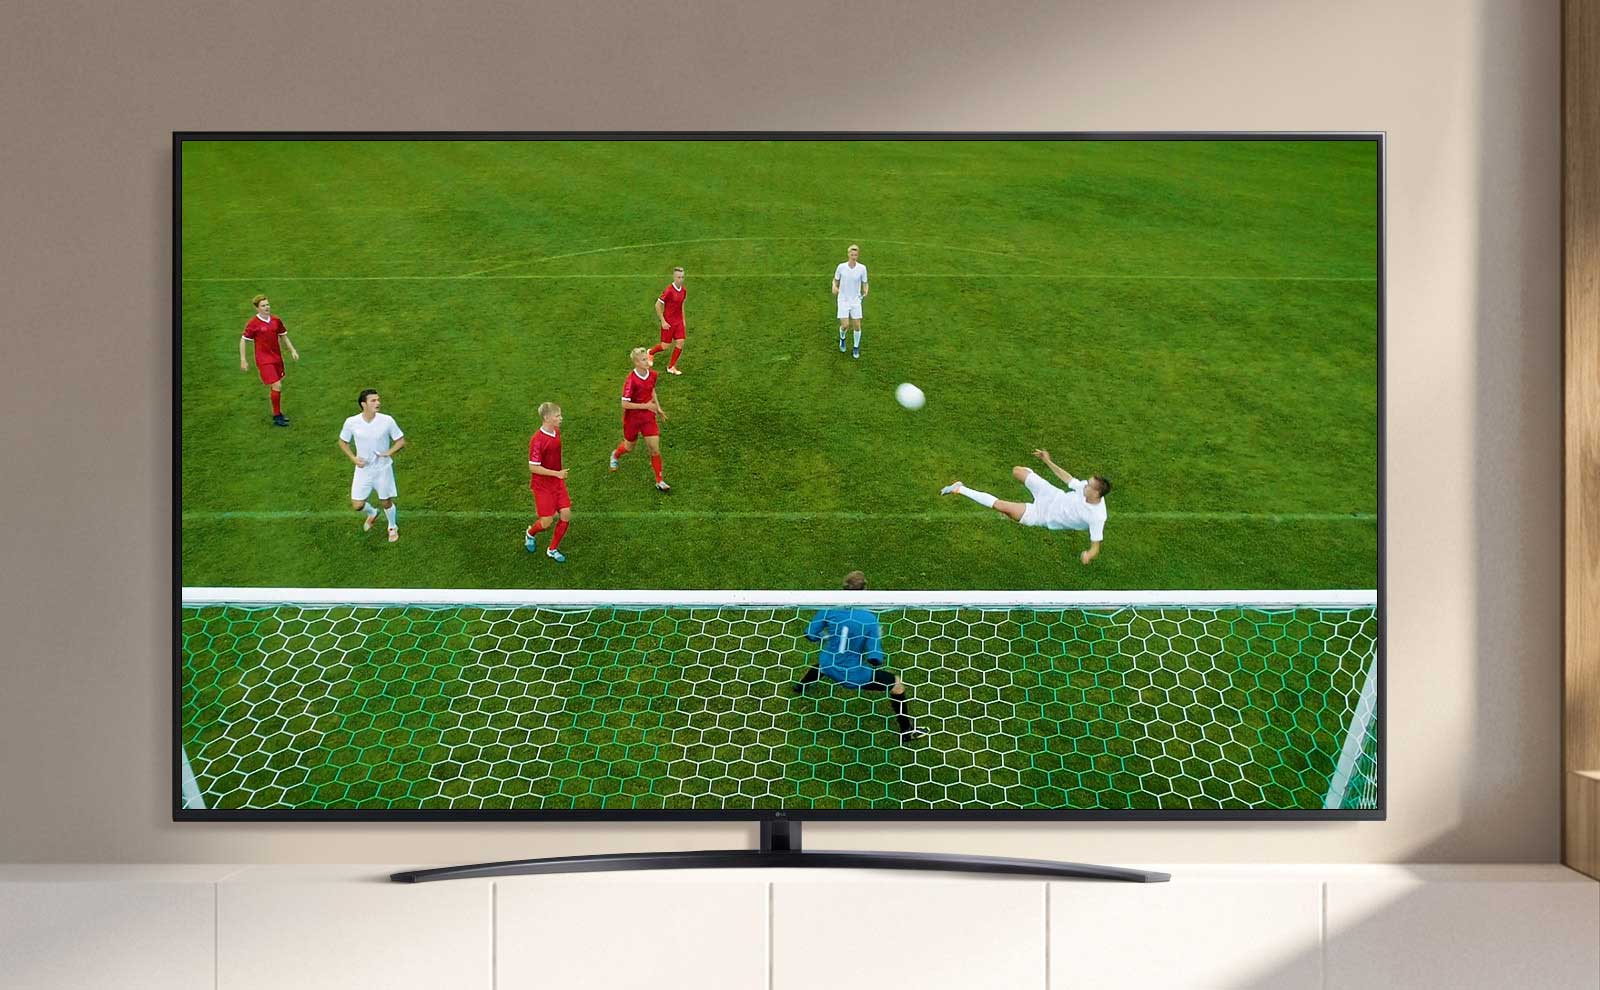 Экран телевизора с футболистом, забивающим гол (просмотр видео)